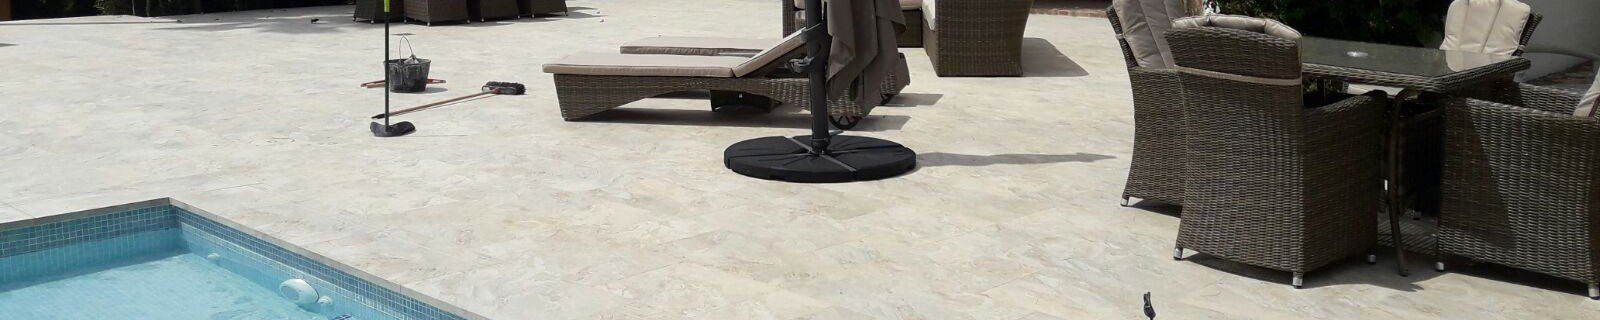 Terraza y coronación de piscina con el modelo Sea Rock Marfil :: Azulejos Eurogres, materiales de construcción en Xabia